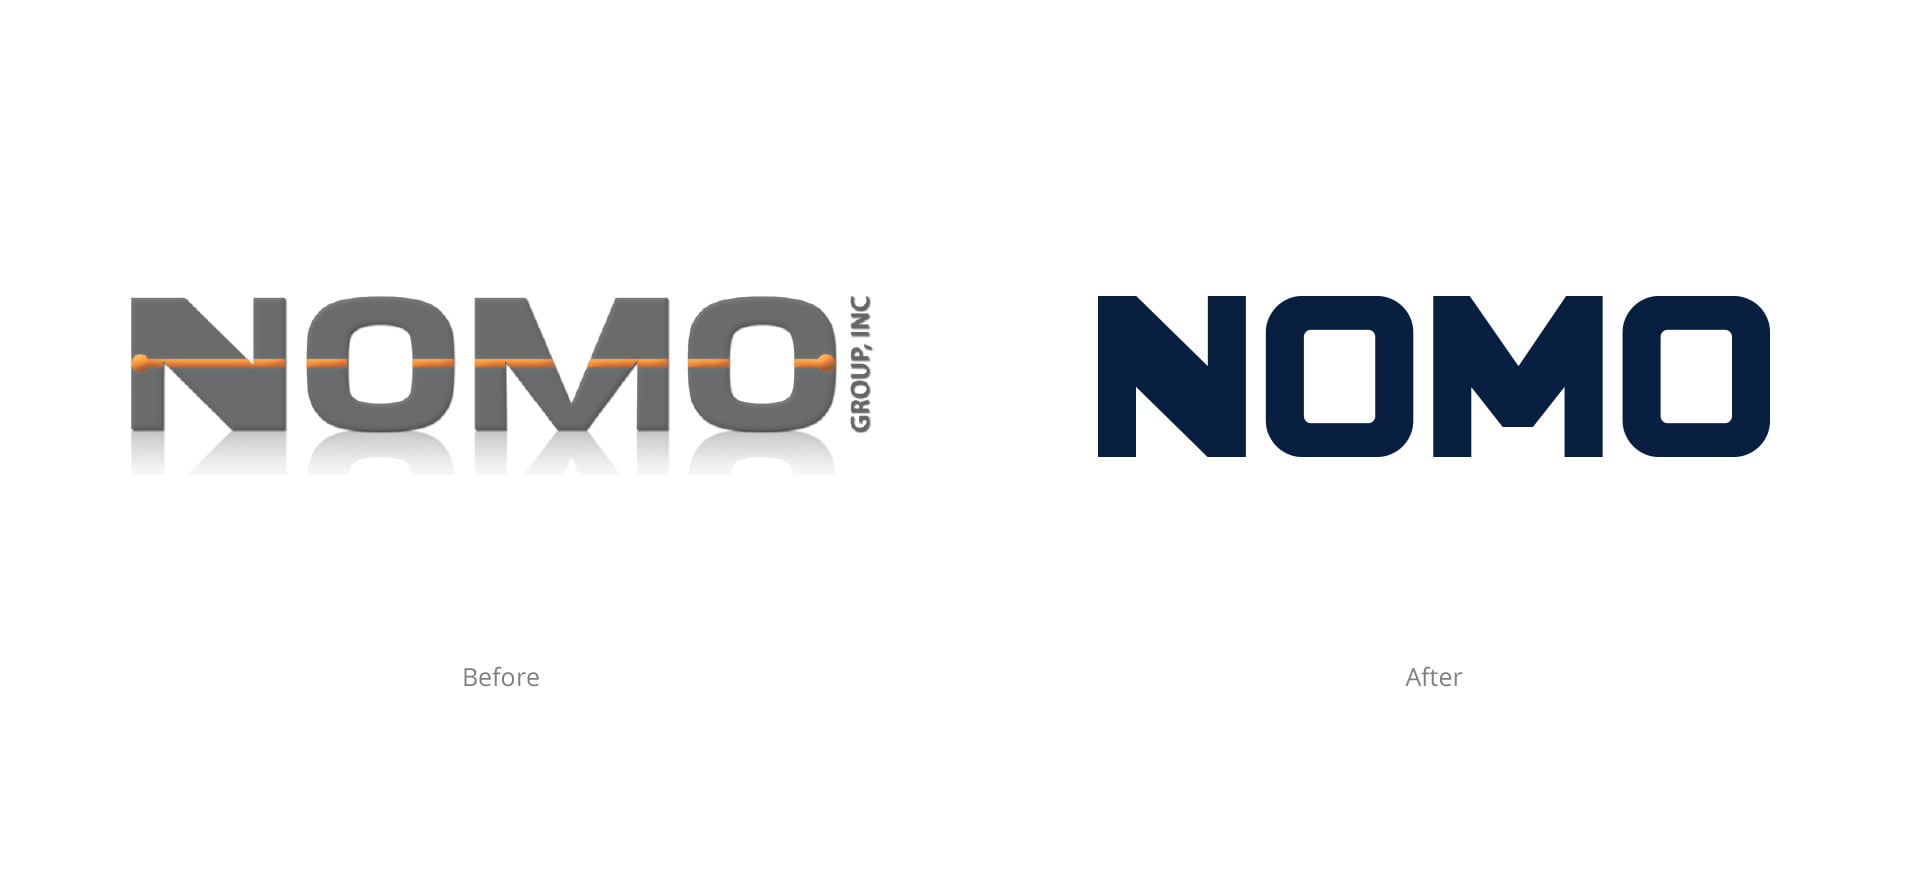 Logotipo de Nomo antes y después del rebranding